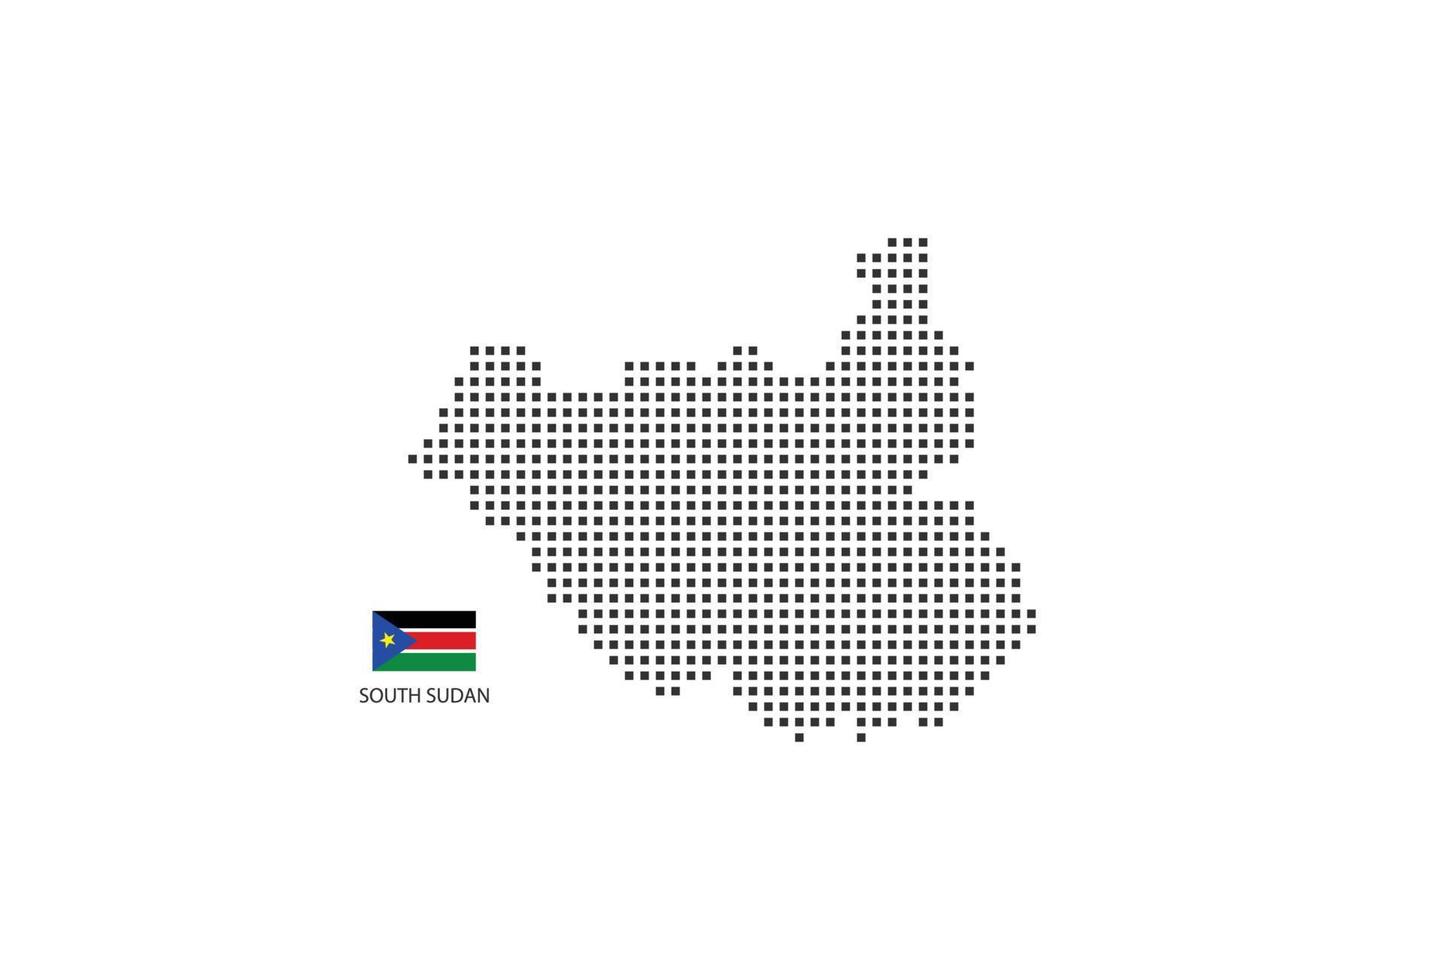 mapa pontilhado de pixel quadrado vetorial do sudão do sul isolado no fundo branco com a bandeira do sudão do sul. vetor